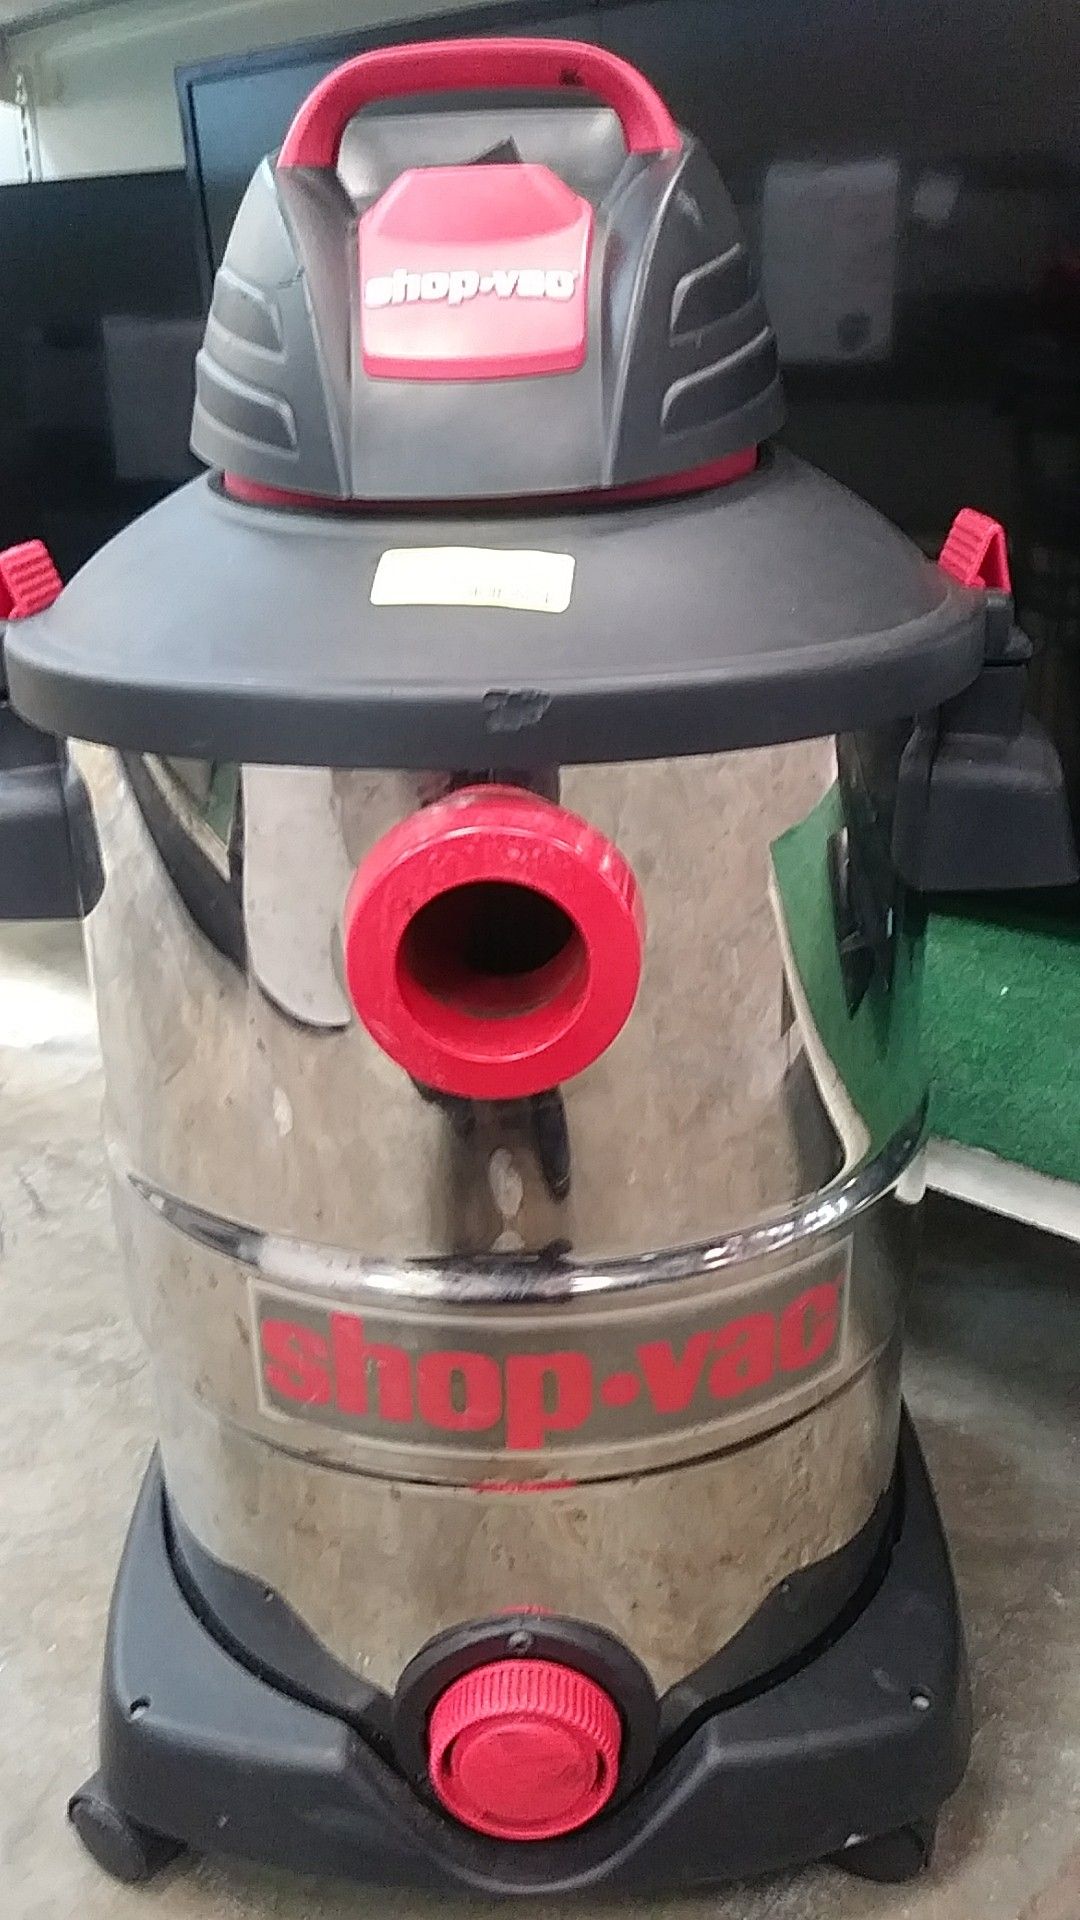 Shop-Vac Vacuum